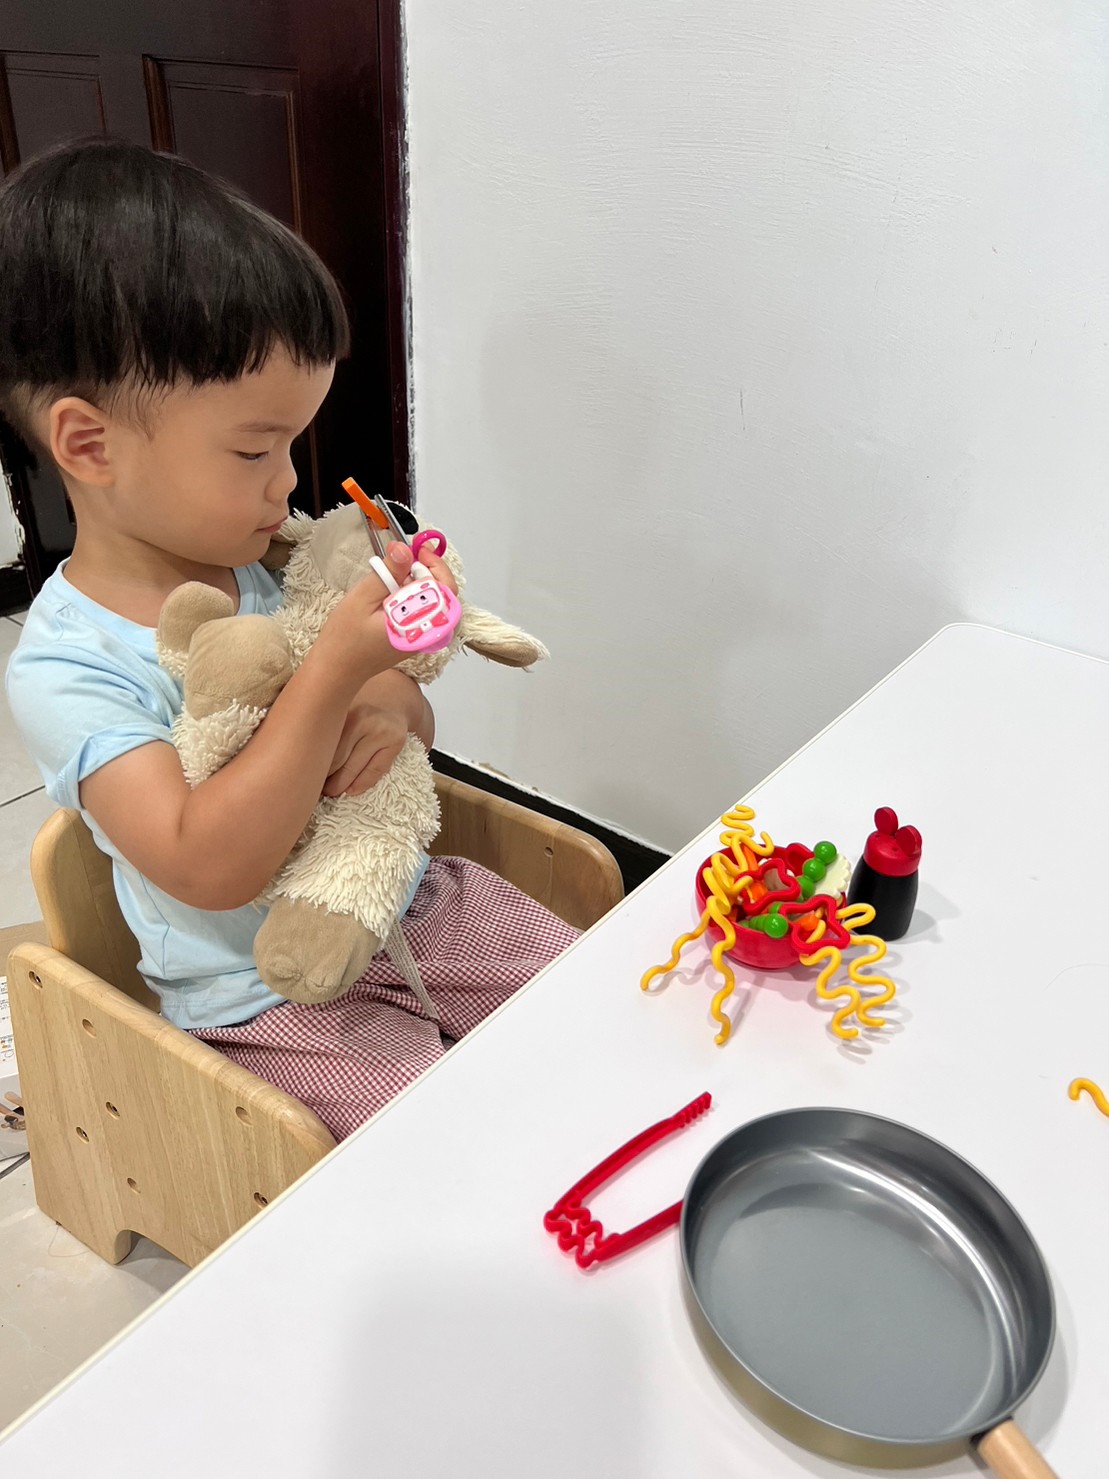 【Plan Toys】小主廚-六件式鍋具組｜高仿真質感鍋具木玩、讓孩子愛上烹飪、扮家家酒